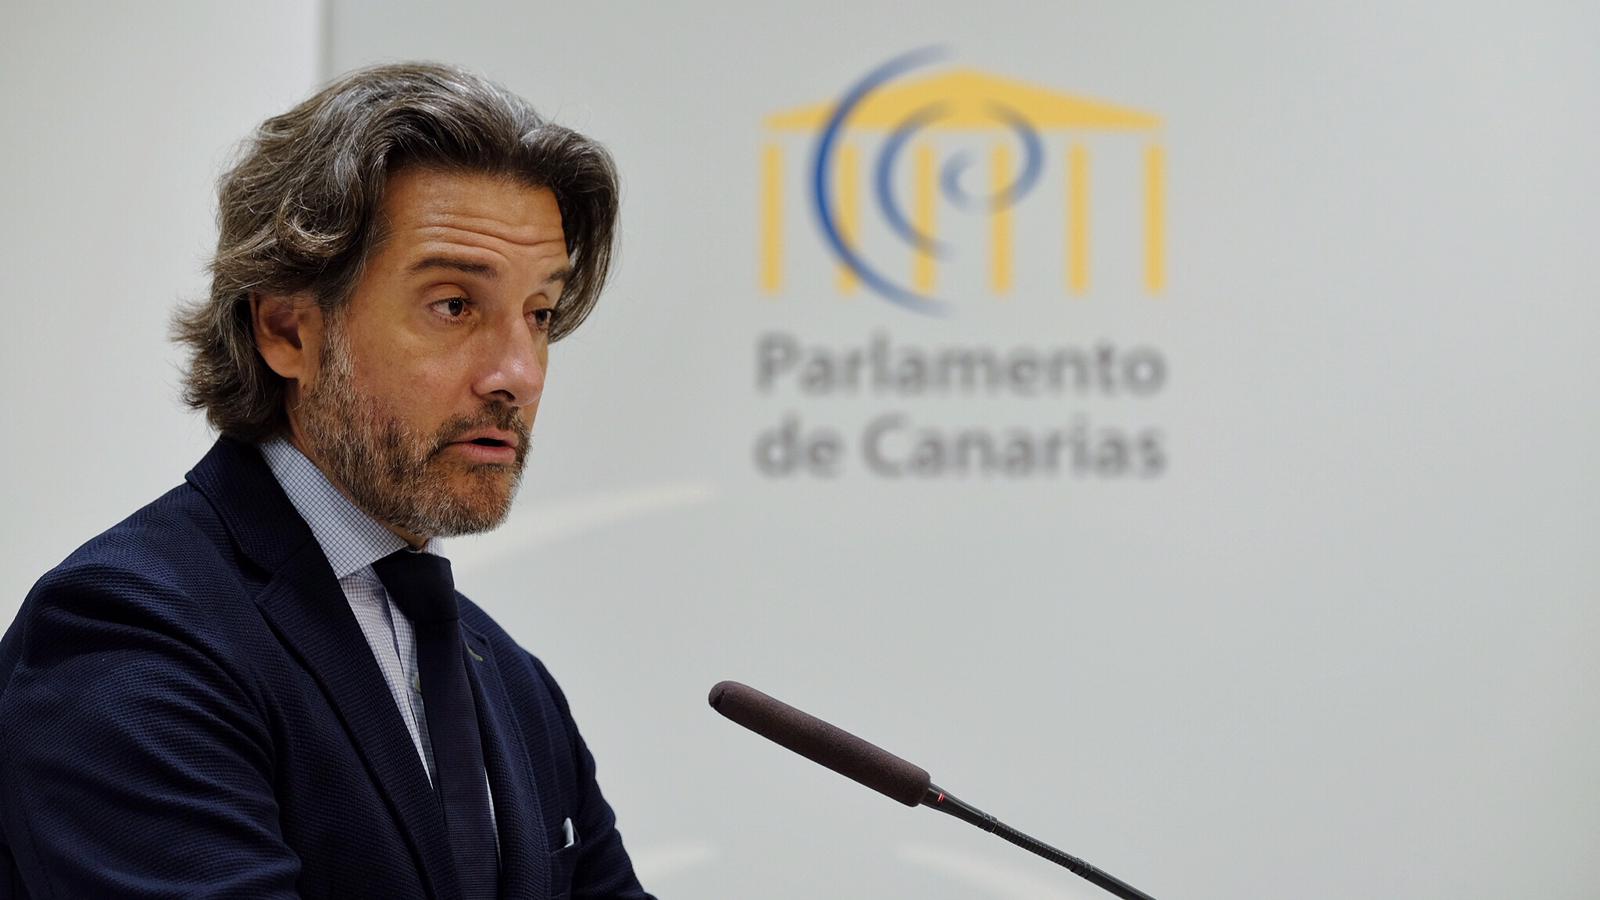 El presidente del Parlamento de Canarias durante la rueda de prensa sobre la presidencia canaria de los parlamentos regionales de la UE para 2020